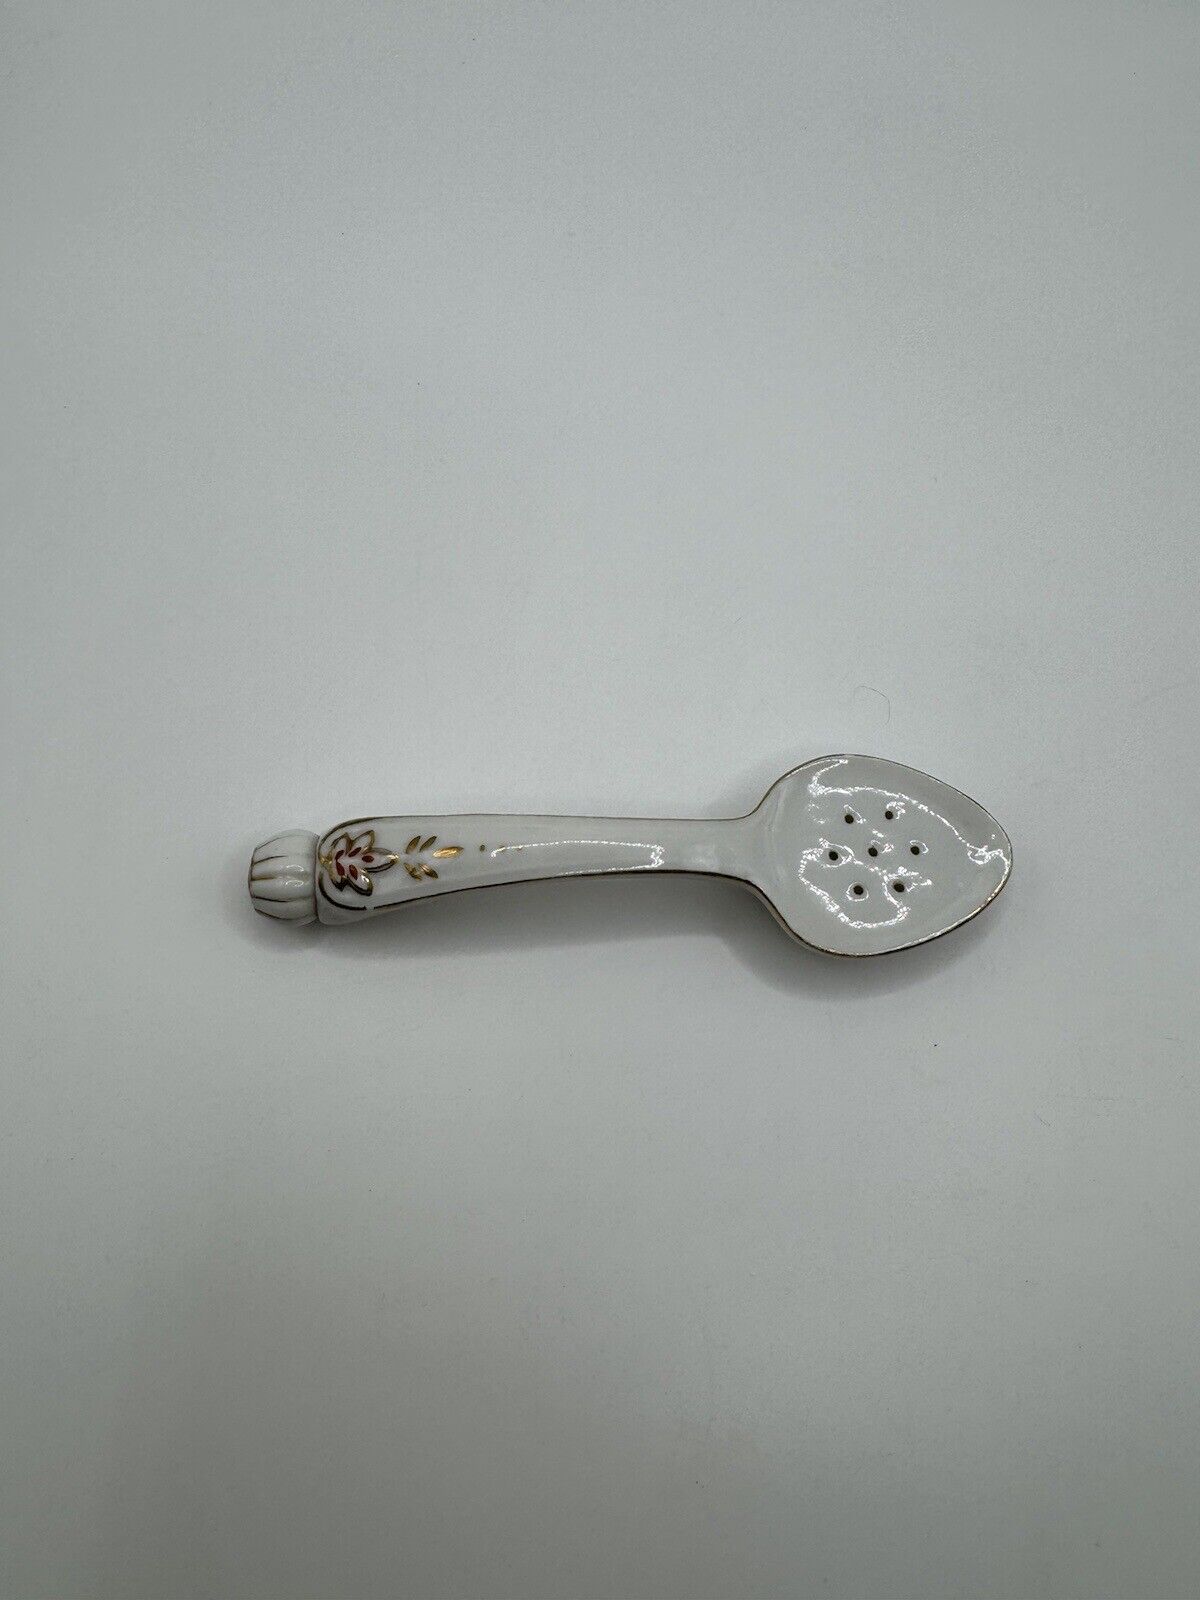 Vintage Unique Handled Porcelain Salt Shaker Spoon Collectible ***